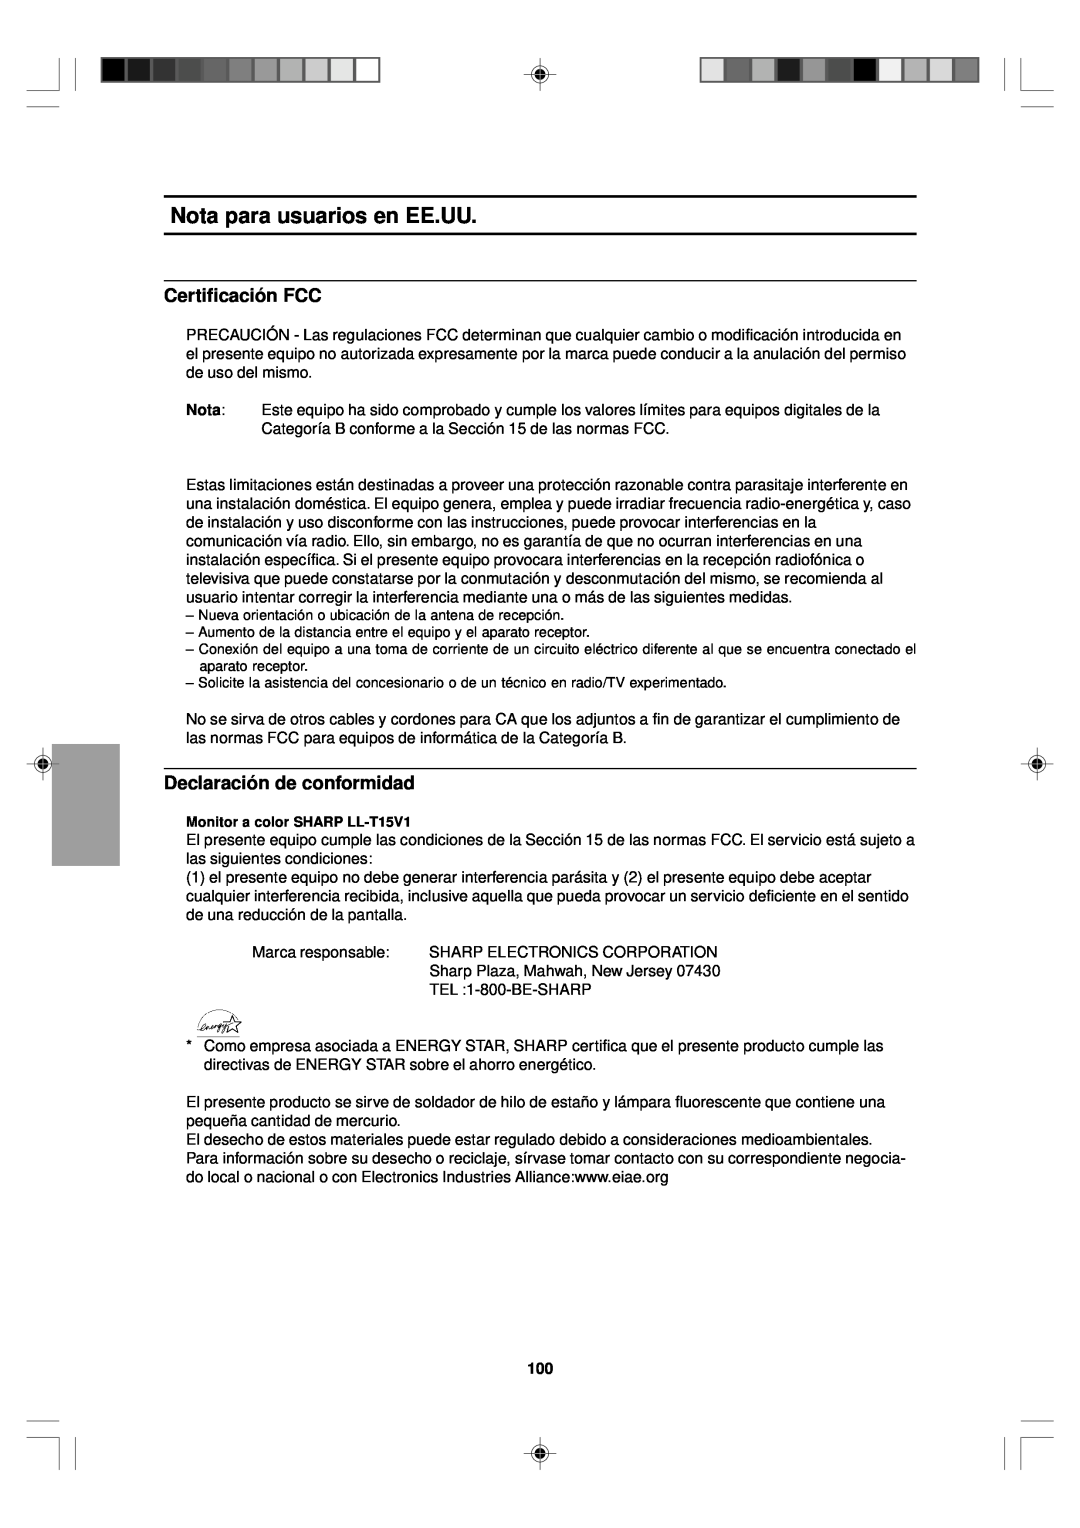 Sharp LL-T15V1 operation manual Nota para usuarios en EE.UU, Certificación FCC, Declaración de conformidad 